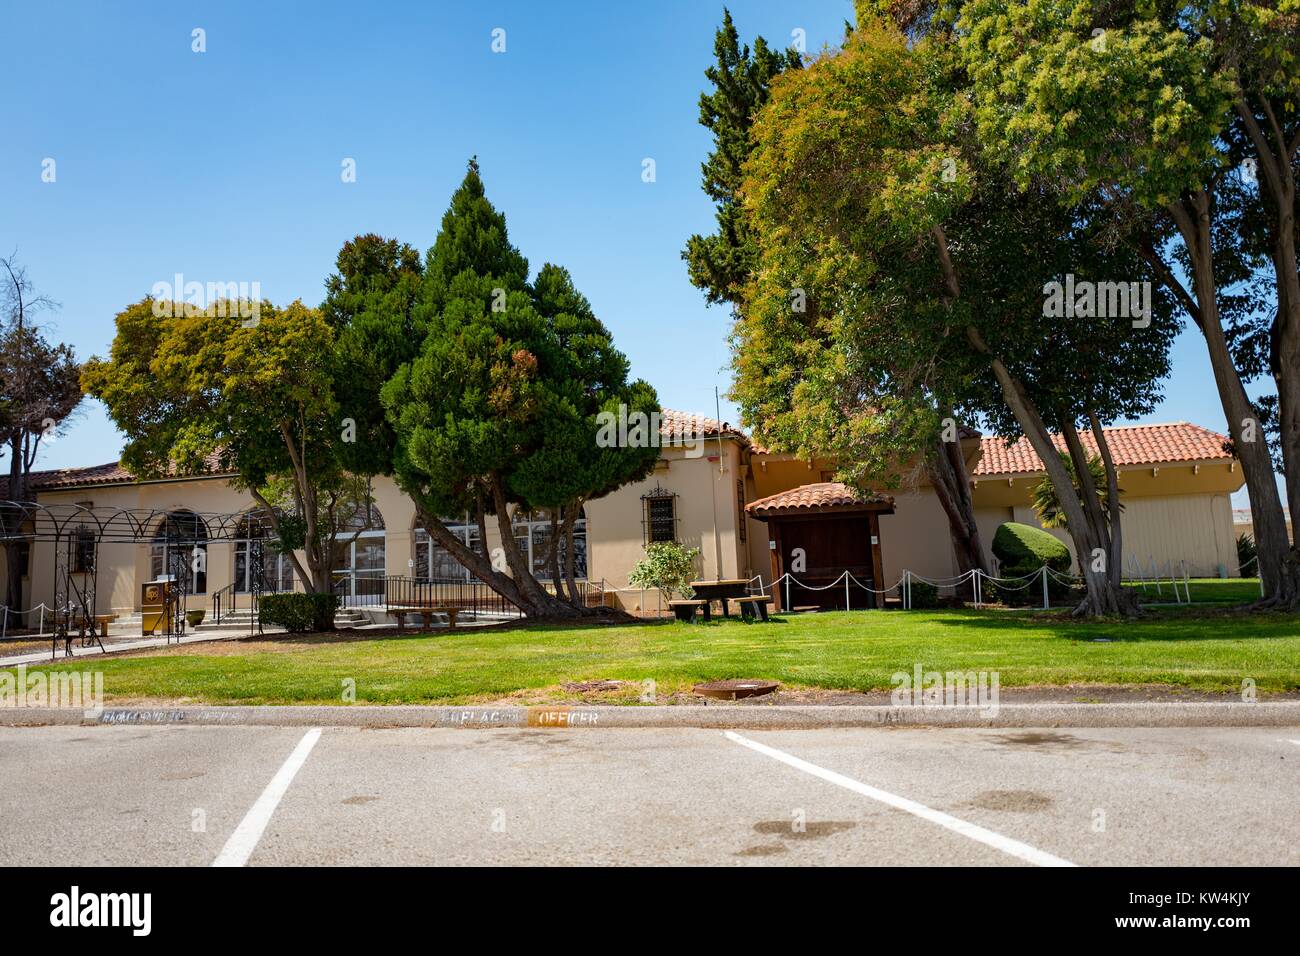 Les bâtiments de style colonial revival espagnol avec des arbres dans la zone sécurisée de la NASA Ames Research Center campus dans la Silicon Valley ville de Palo Alto, Californie, le 25 août 2016. Banque D'Images